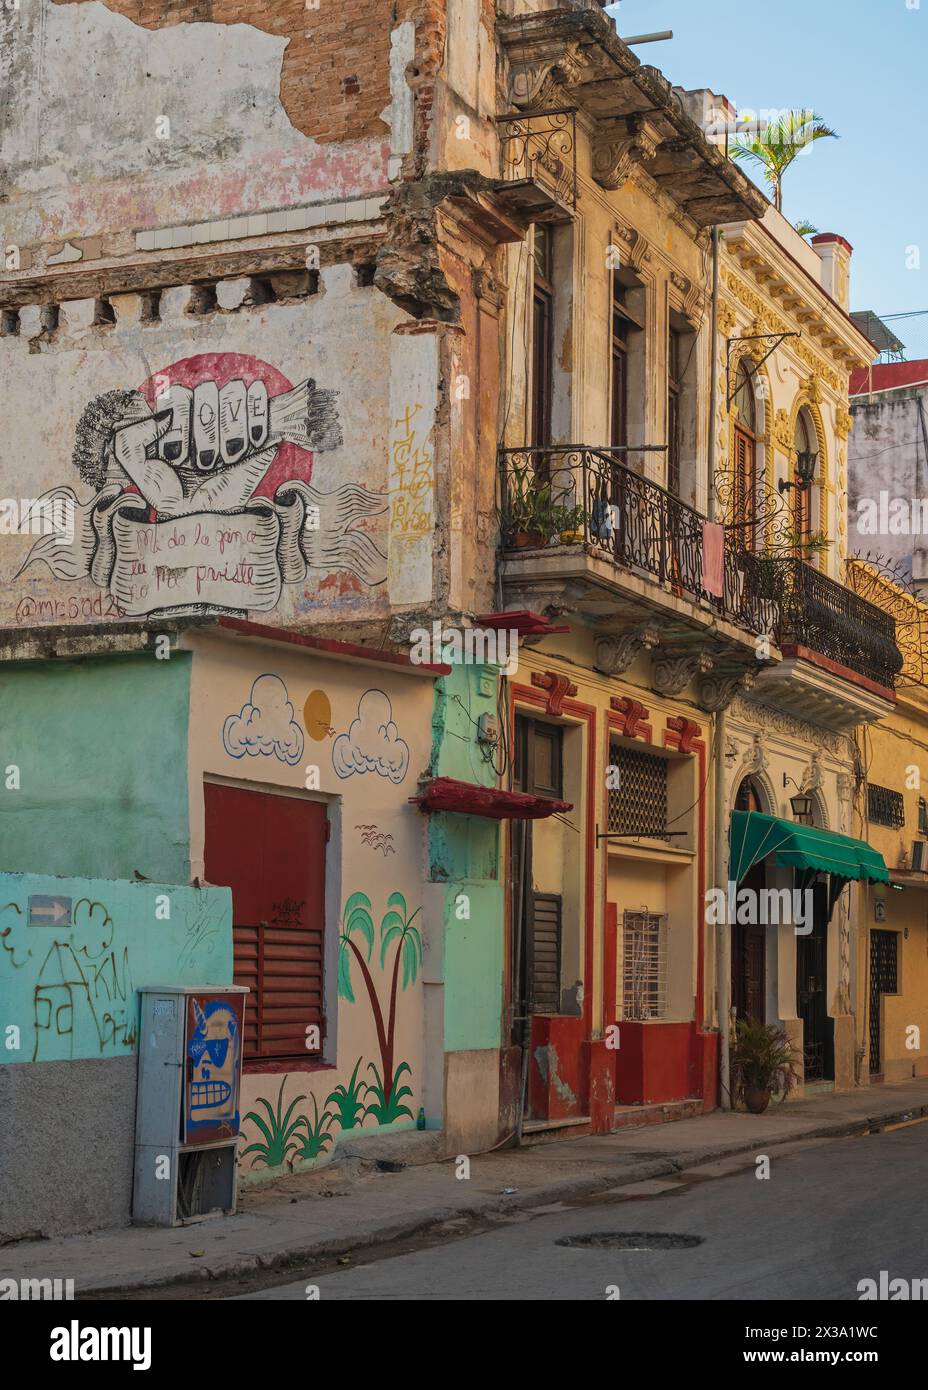 Vue typique de la rue, un mélange de vieilles propriétés, de bâtiments partiellement démolis et d'art de rue dans la vieille ville, la Havane, Cuba Banque D'Images